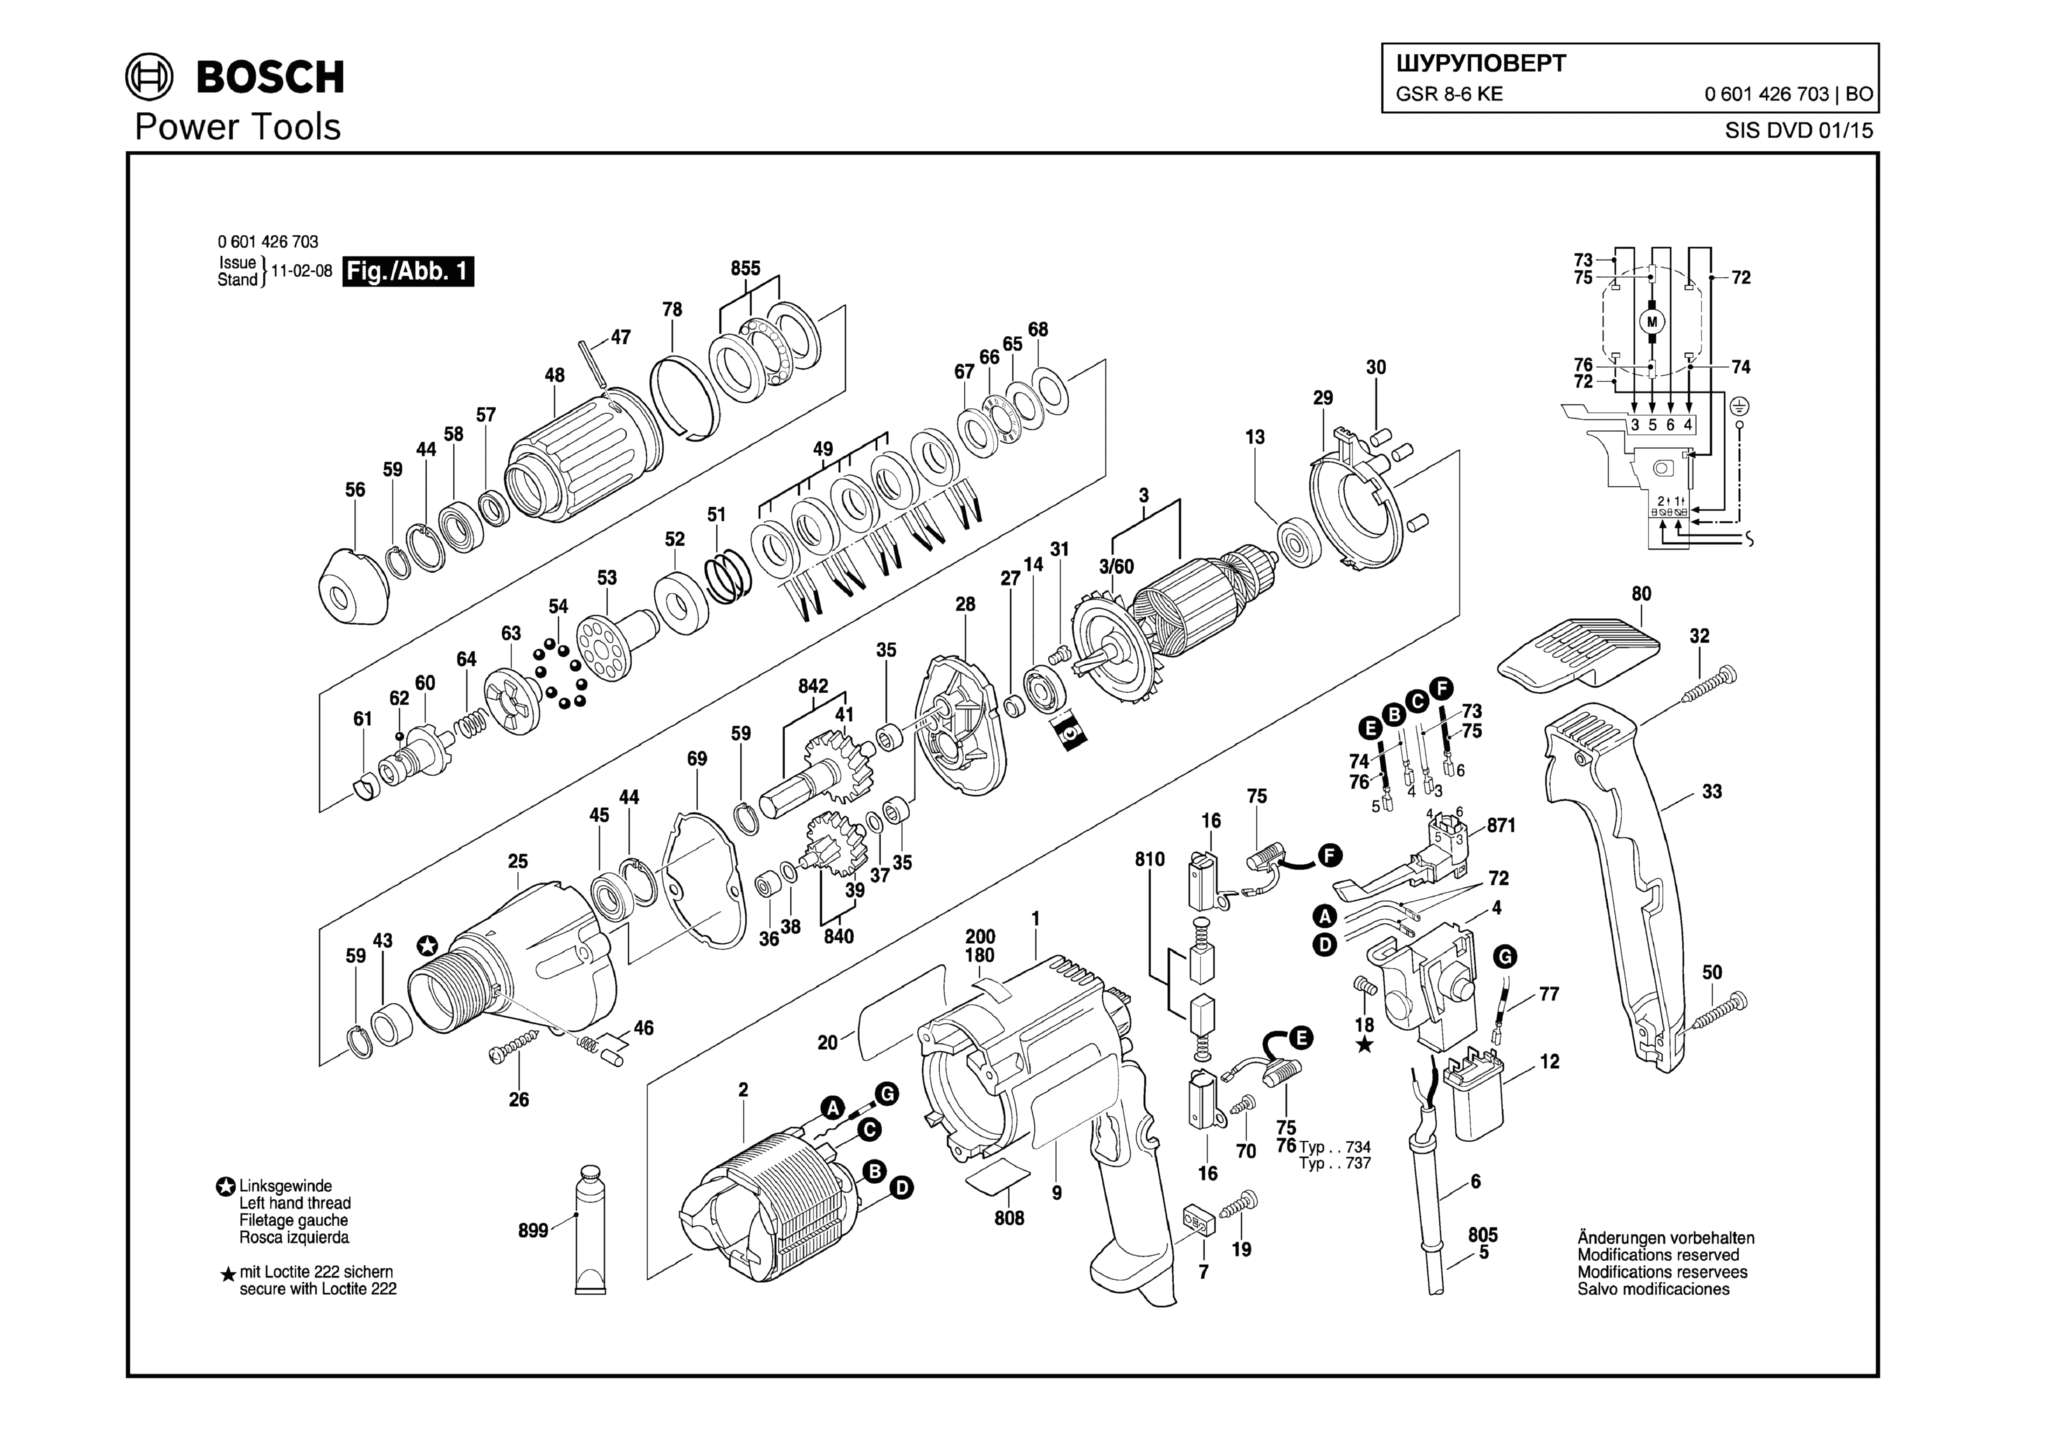 Запчасти, схема и деталировка Bosch GSR 8-6 KE (ТИП 0601426703)